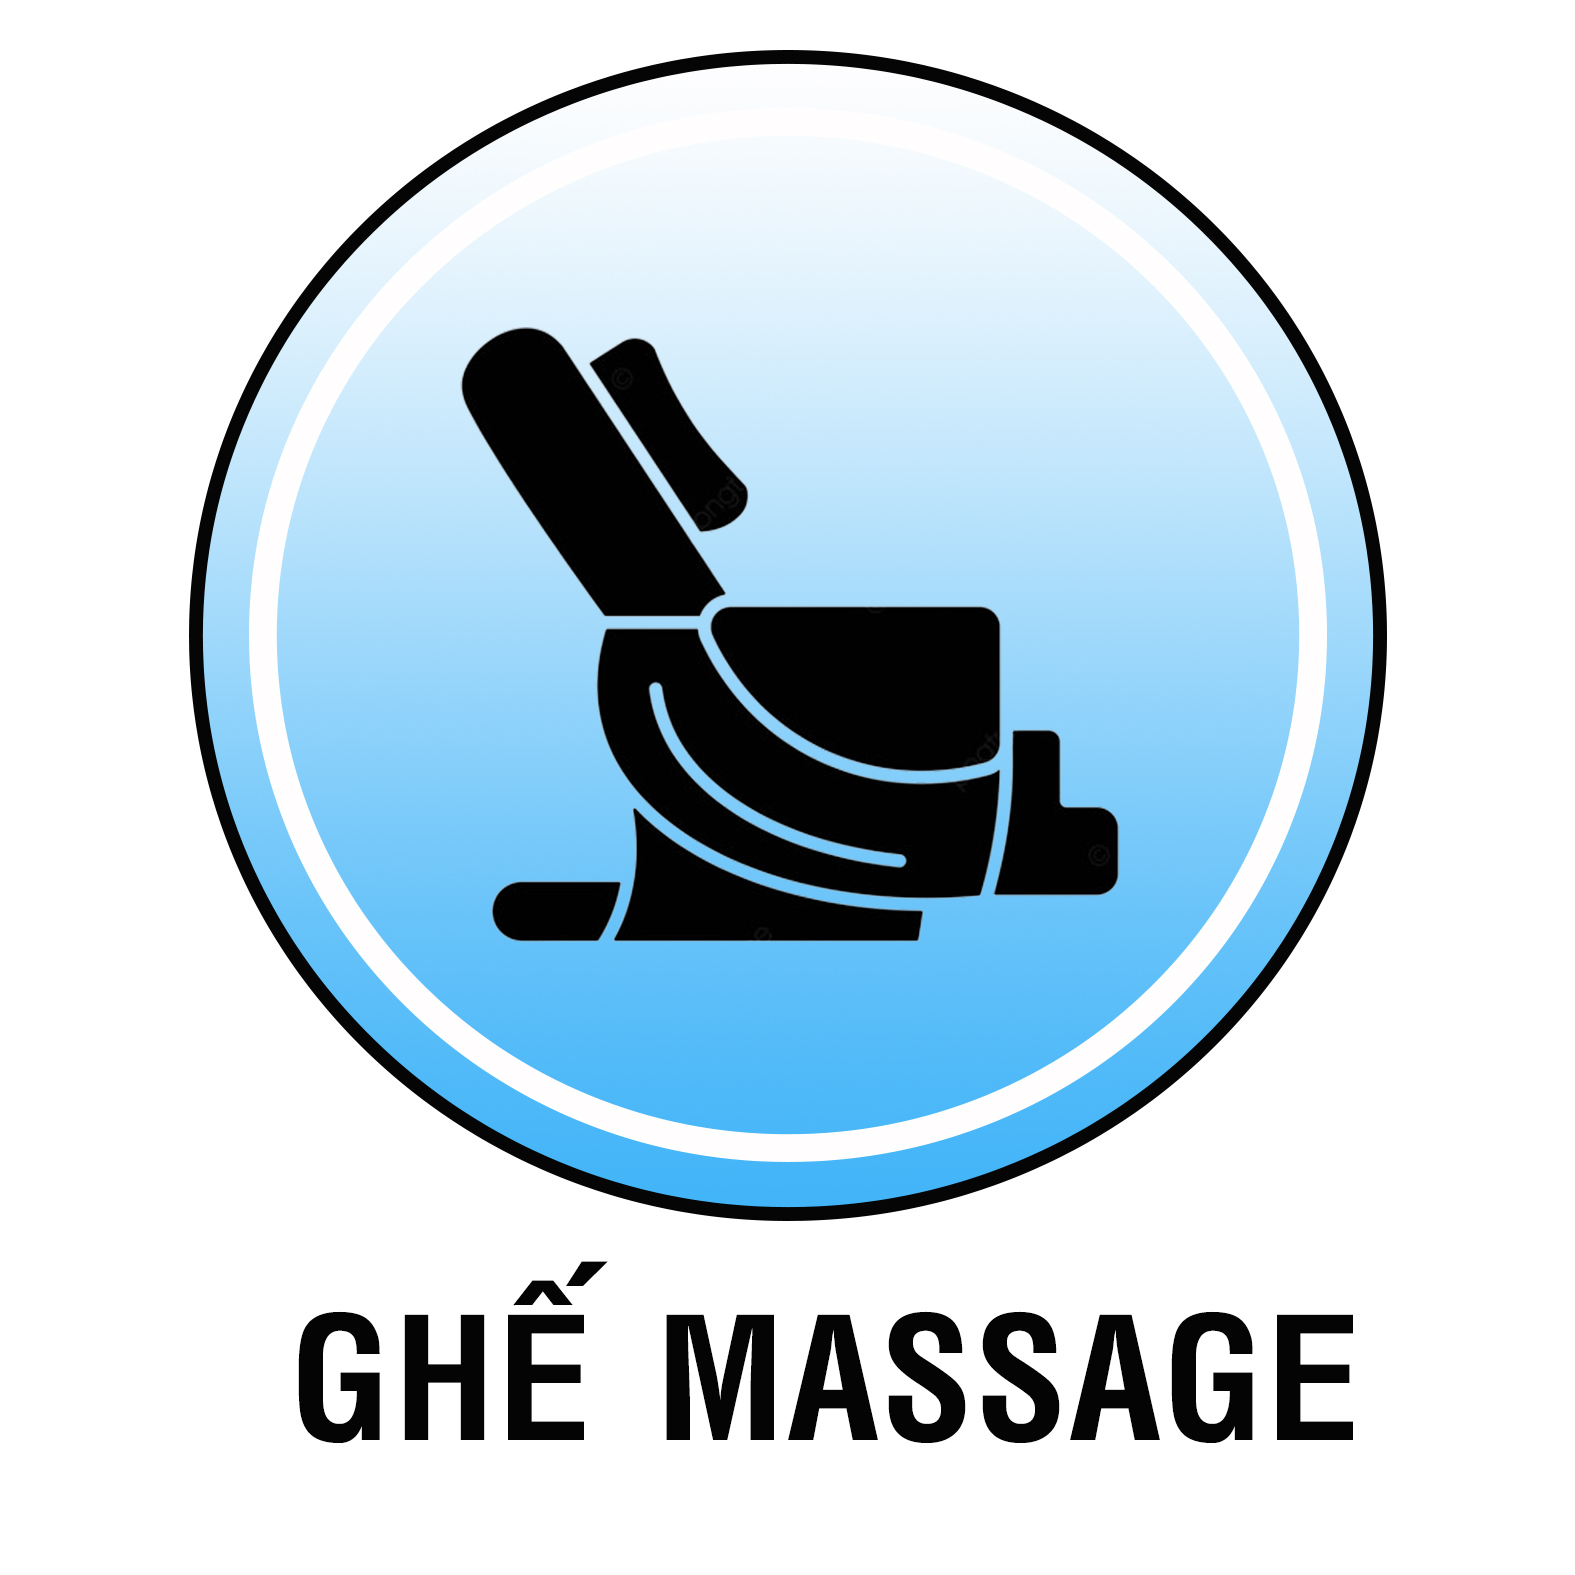 1704637904_icon_ghe_massage_2.jpg